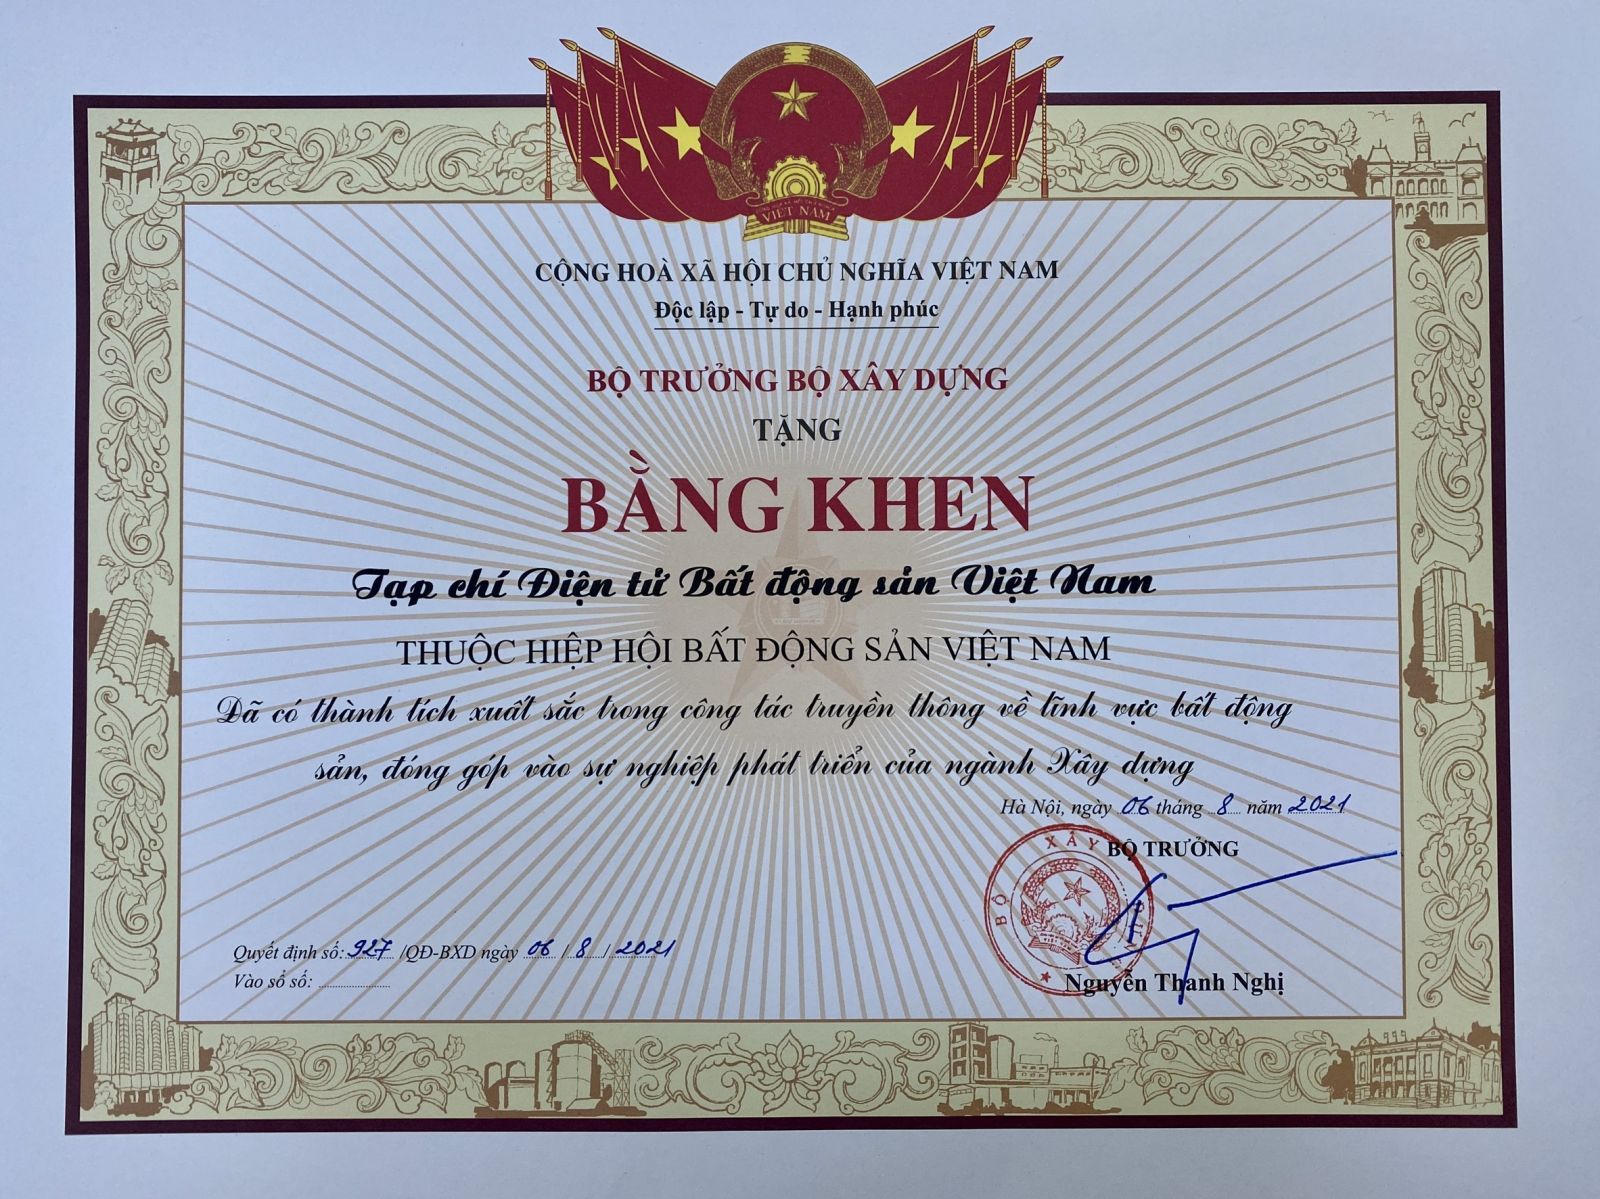 Bộ trưởng Bộ Xây dựng có bằng khen tặng Tạp chí điện tử Bất động sản Việt Nam đã có thành tích xuất sắc trong công tác truyền thông về lĩnh vực bất động sản, đóng góp vào sự nghiệp phát triển của ngành Xây dựng.